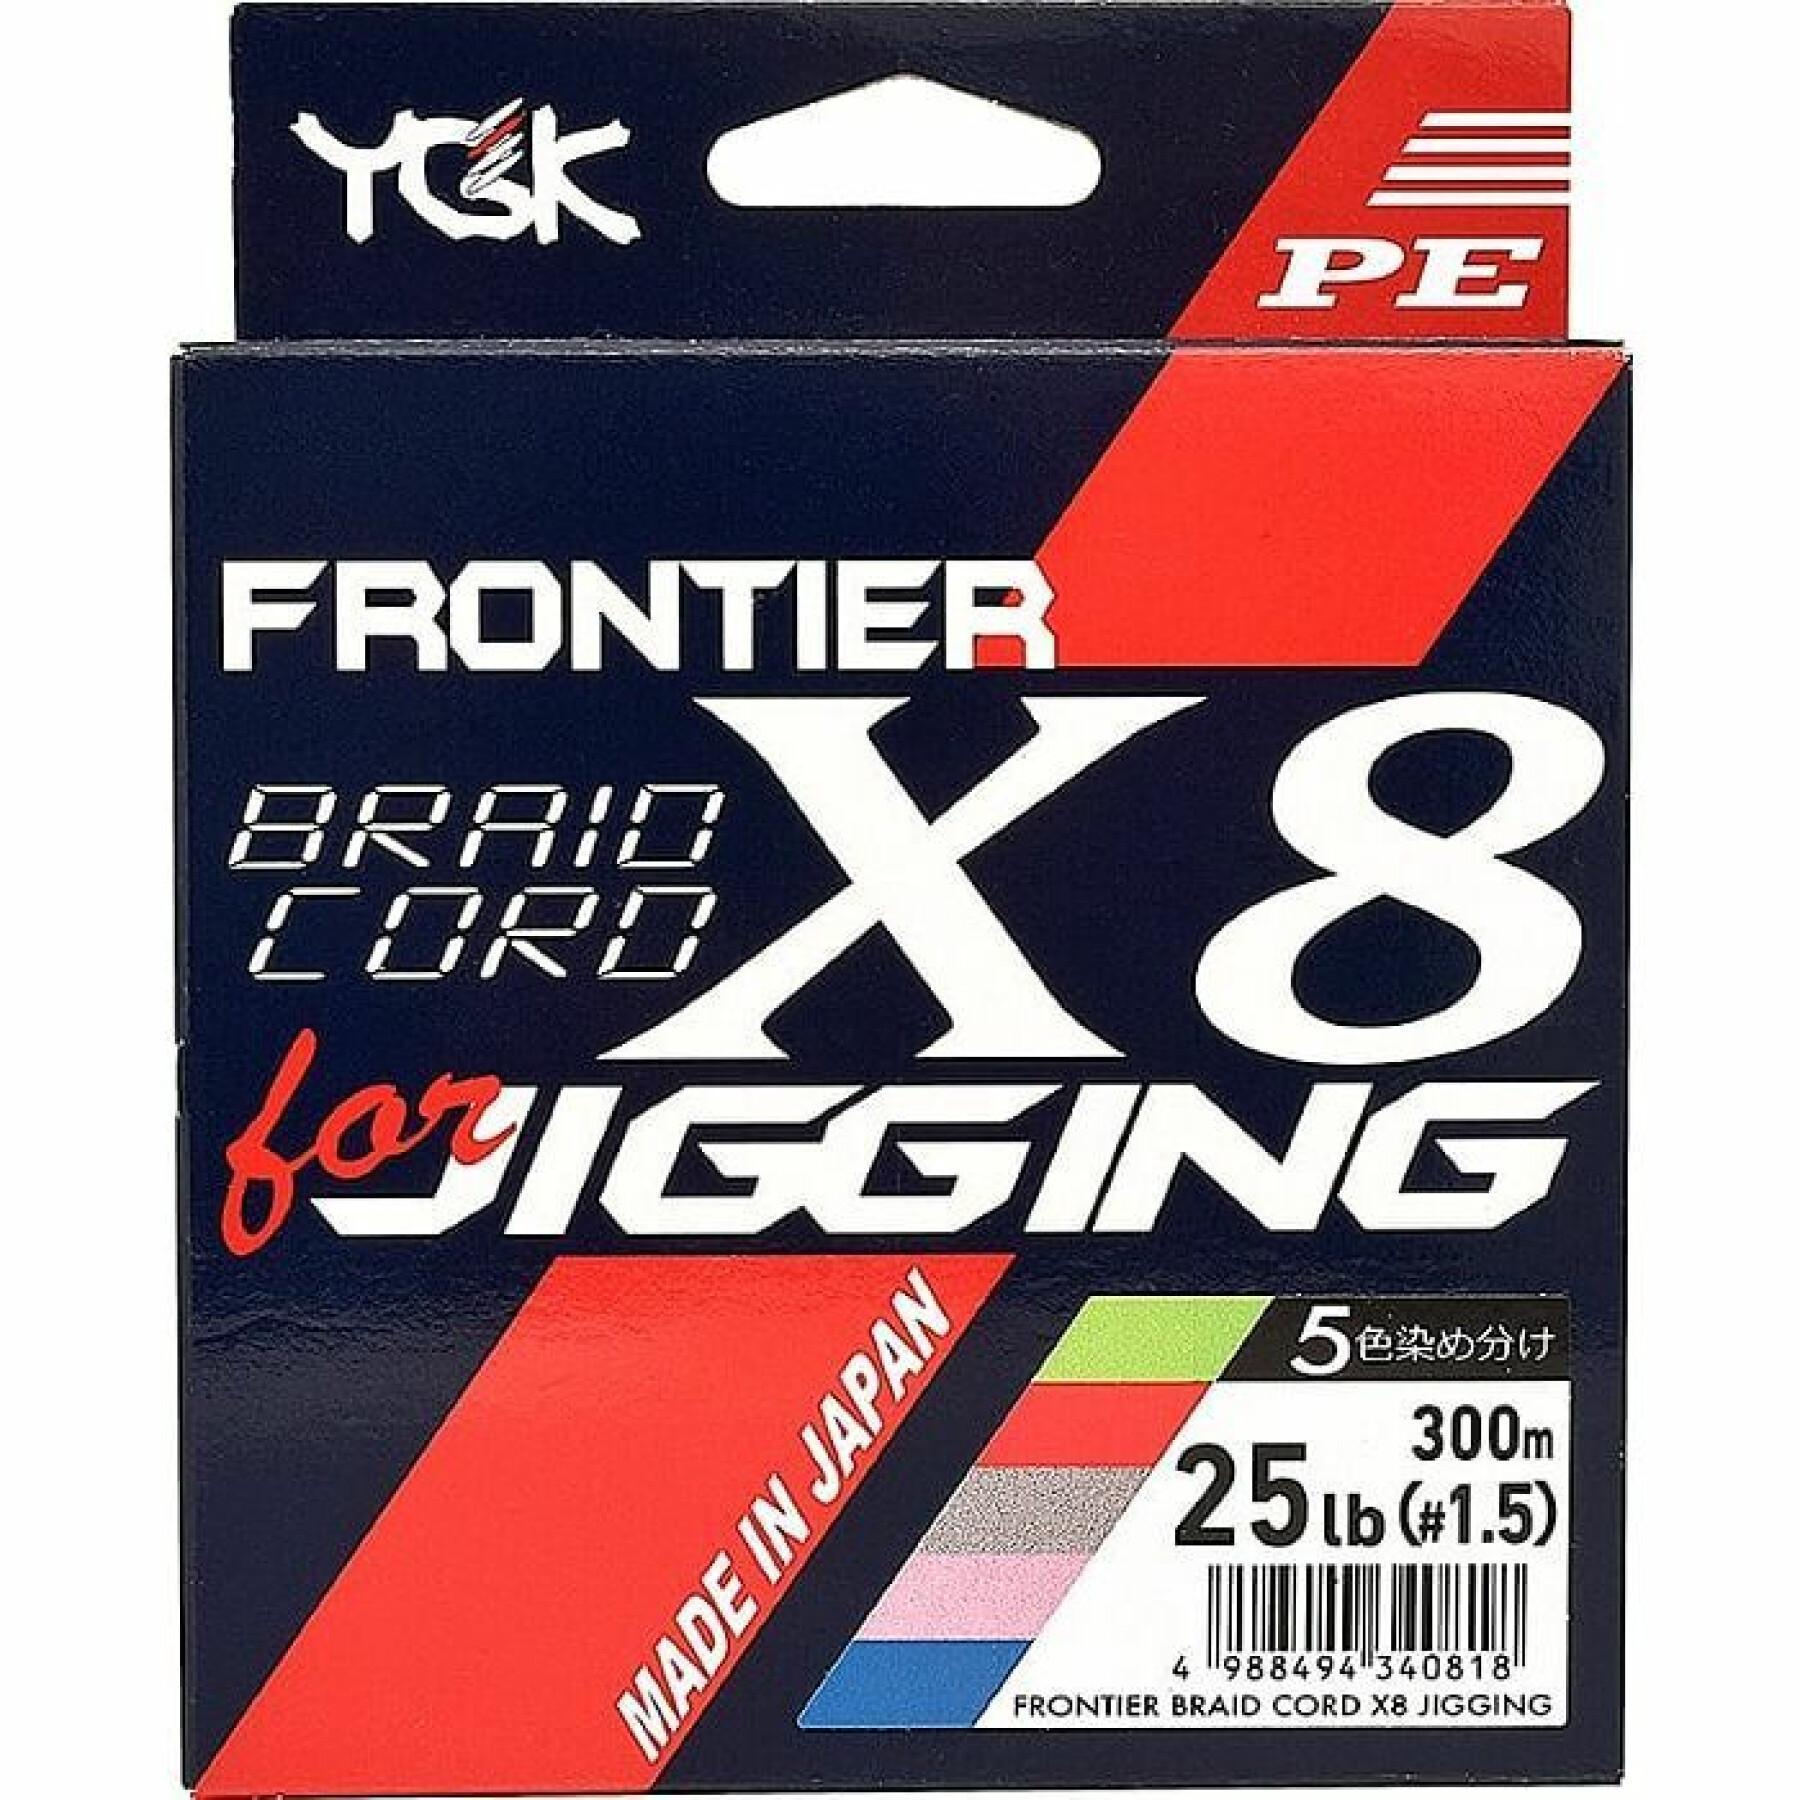 Treccia a 8 fili YGK Frontier Braid Cord 200m